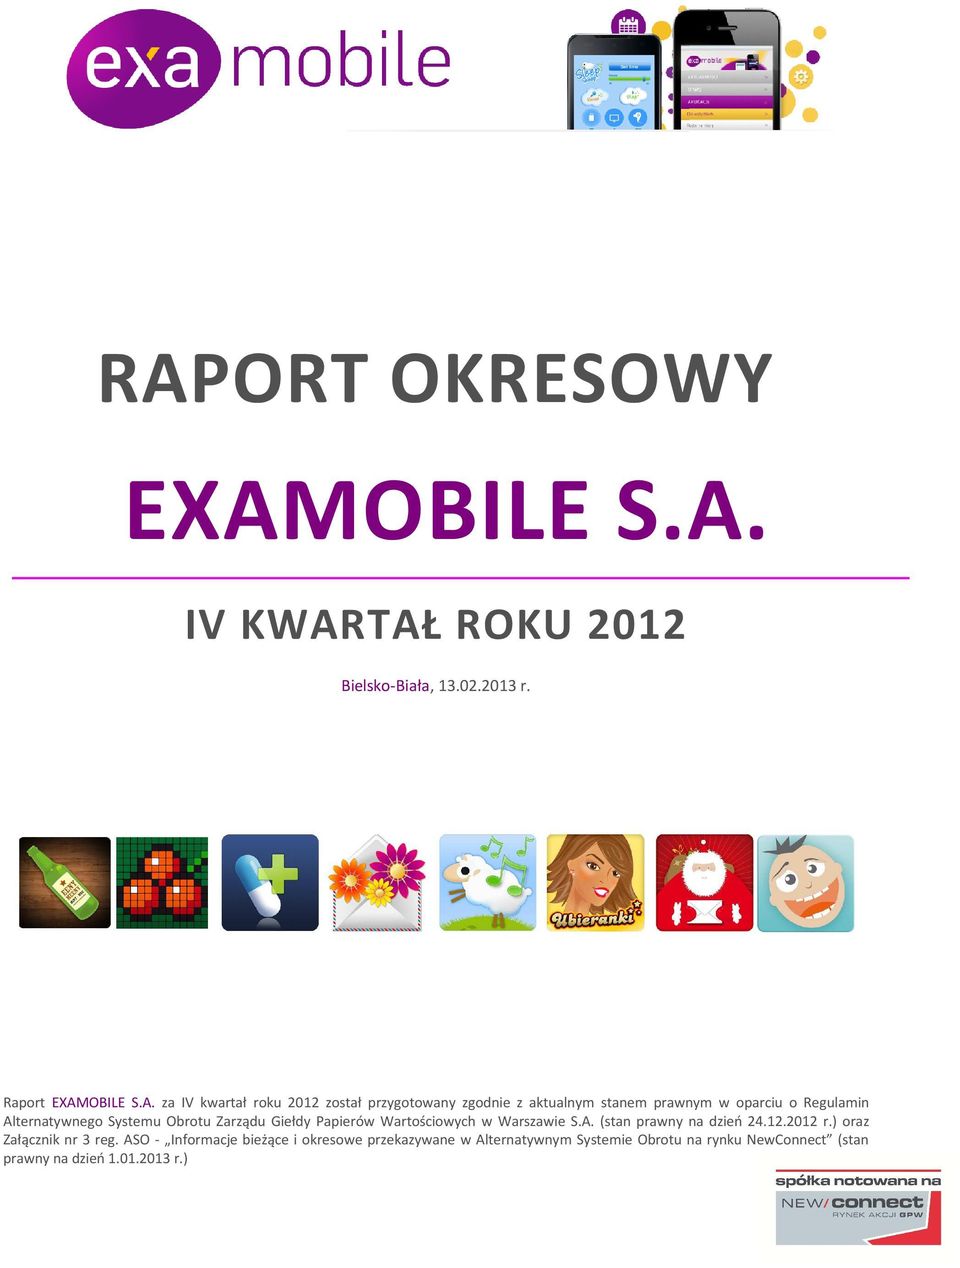 Giełdy Papierów Wartościowych w Warszawie S.A. (stan prawny na dzień 24.12.2012 r.) oraz Załącznik nr 3 reg.